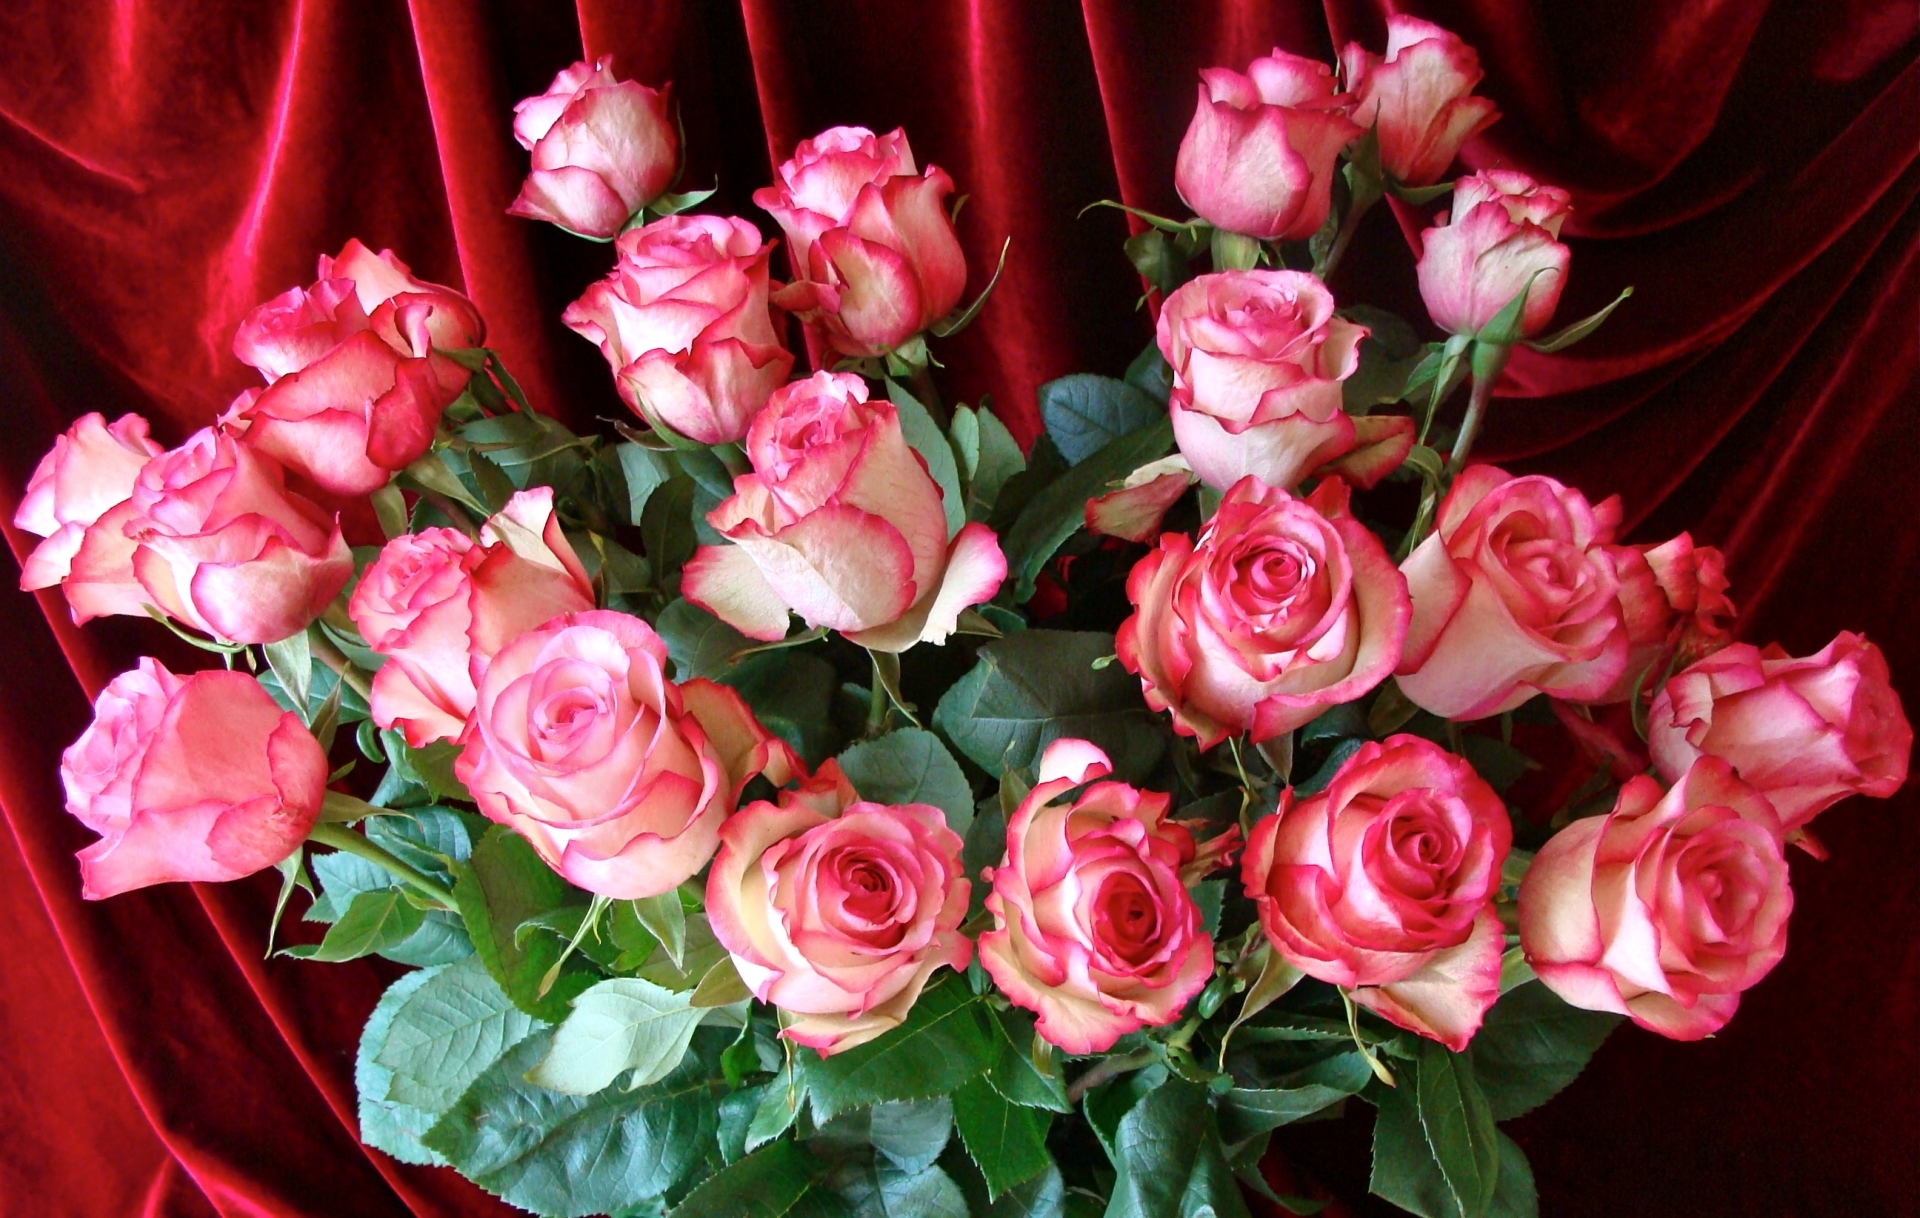 Красивые открытки с днем рождения женщине со стихами бесплатно розы